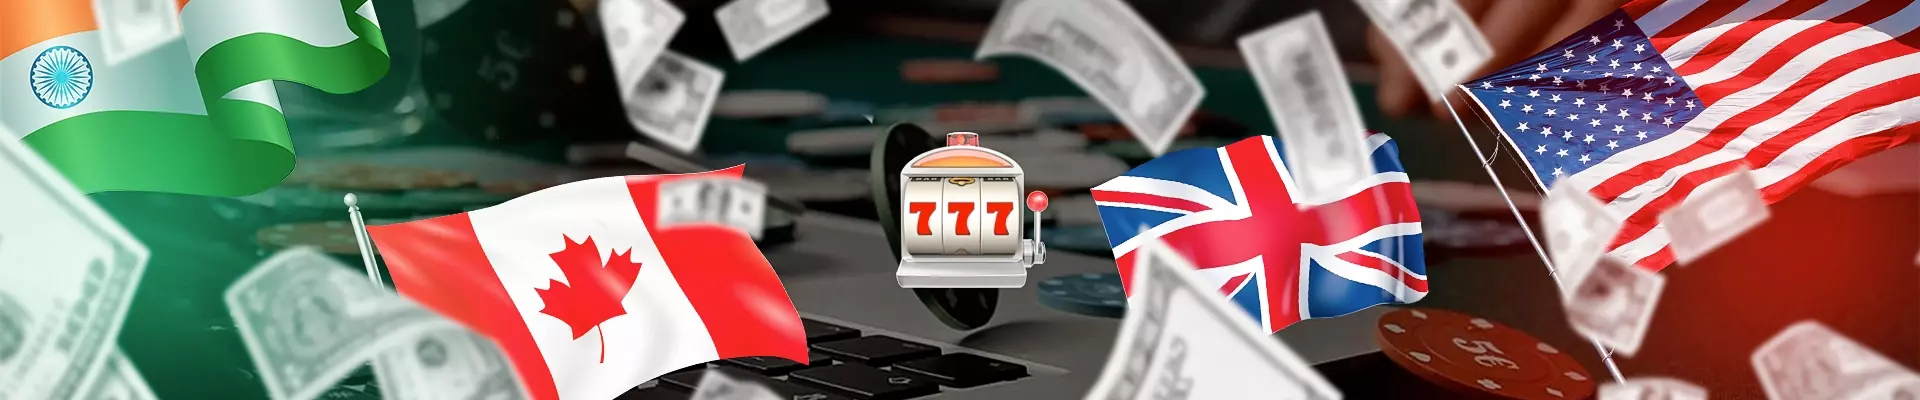 header top 5 pays passionnÃ©s par les jeux d'argent